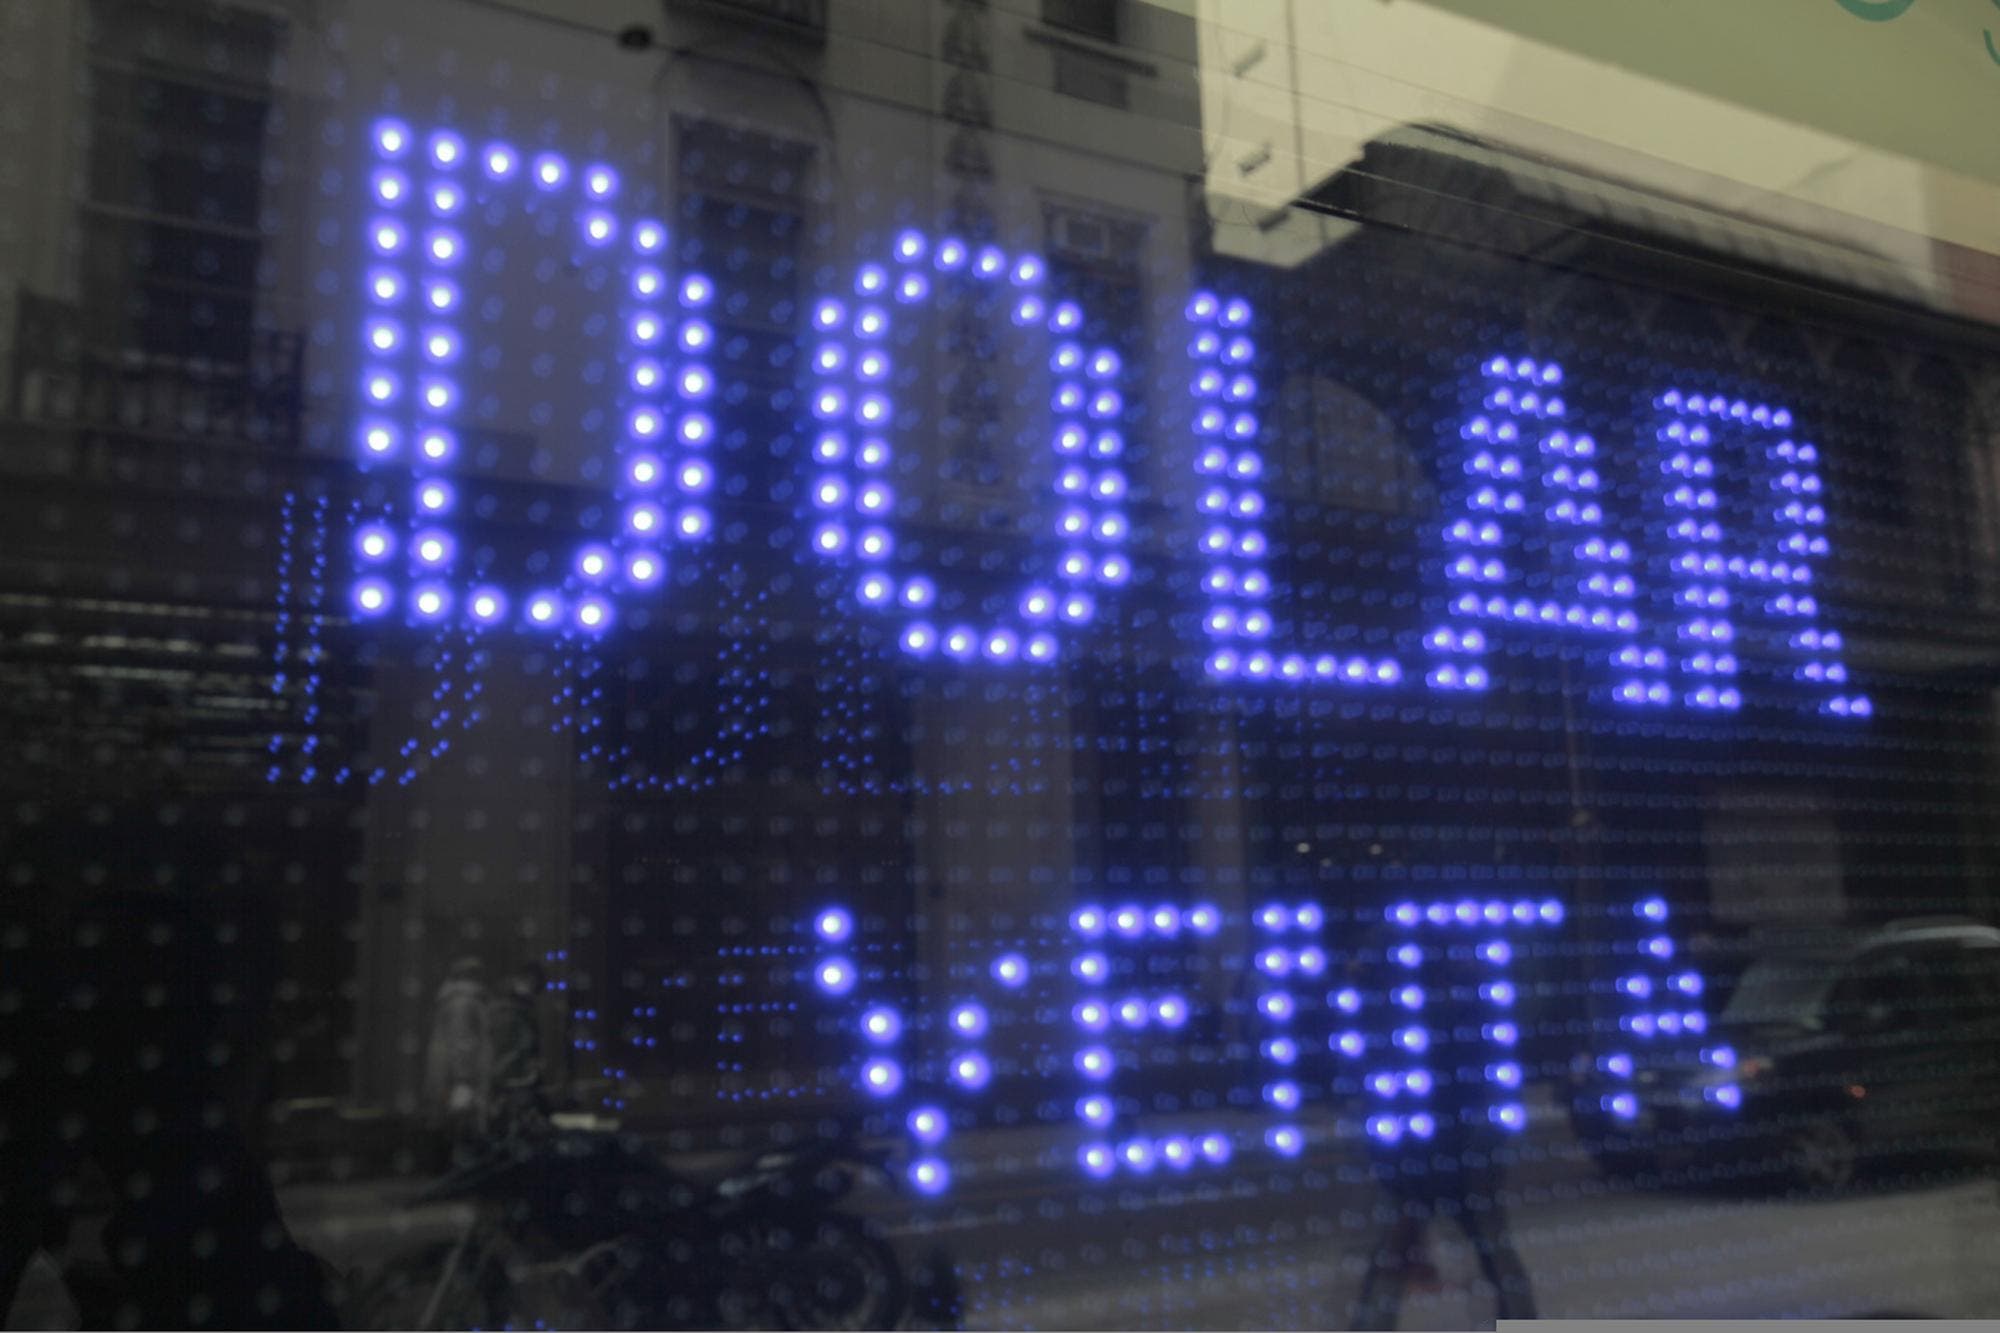 Dolar Hoy Blue - Dólar blue hoy: a cuánto cotiza este 1 de julio | Panorama 24 - Uno de los aspectos principales a la hora de conocer el precio dolar hoy es saber a qué moneda hay.